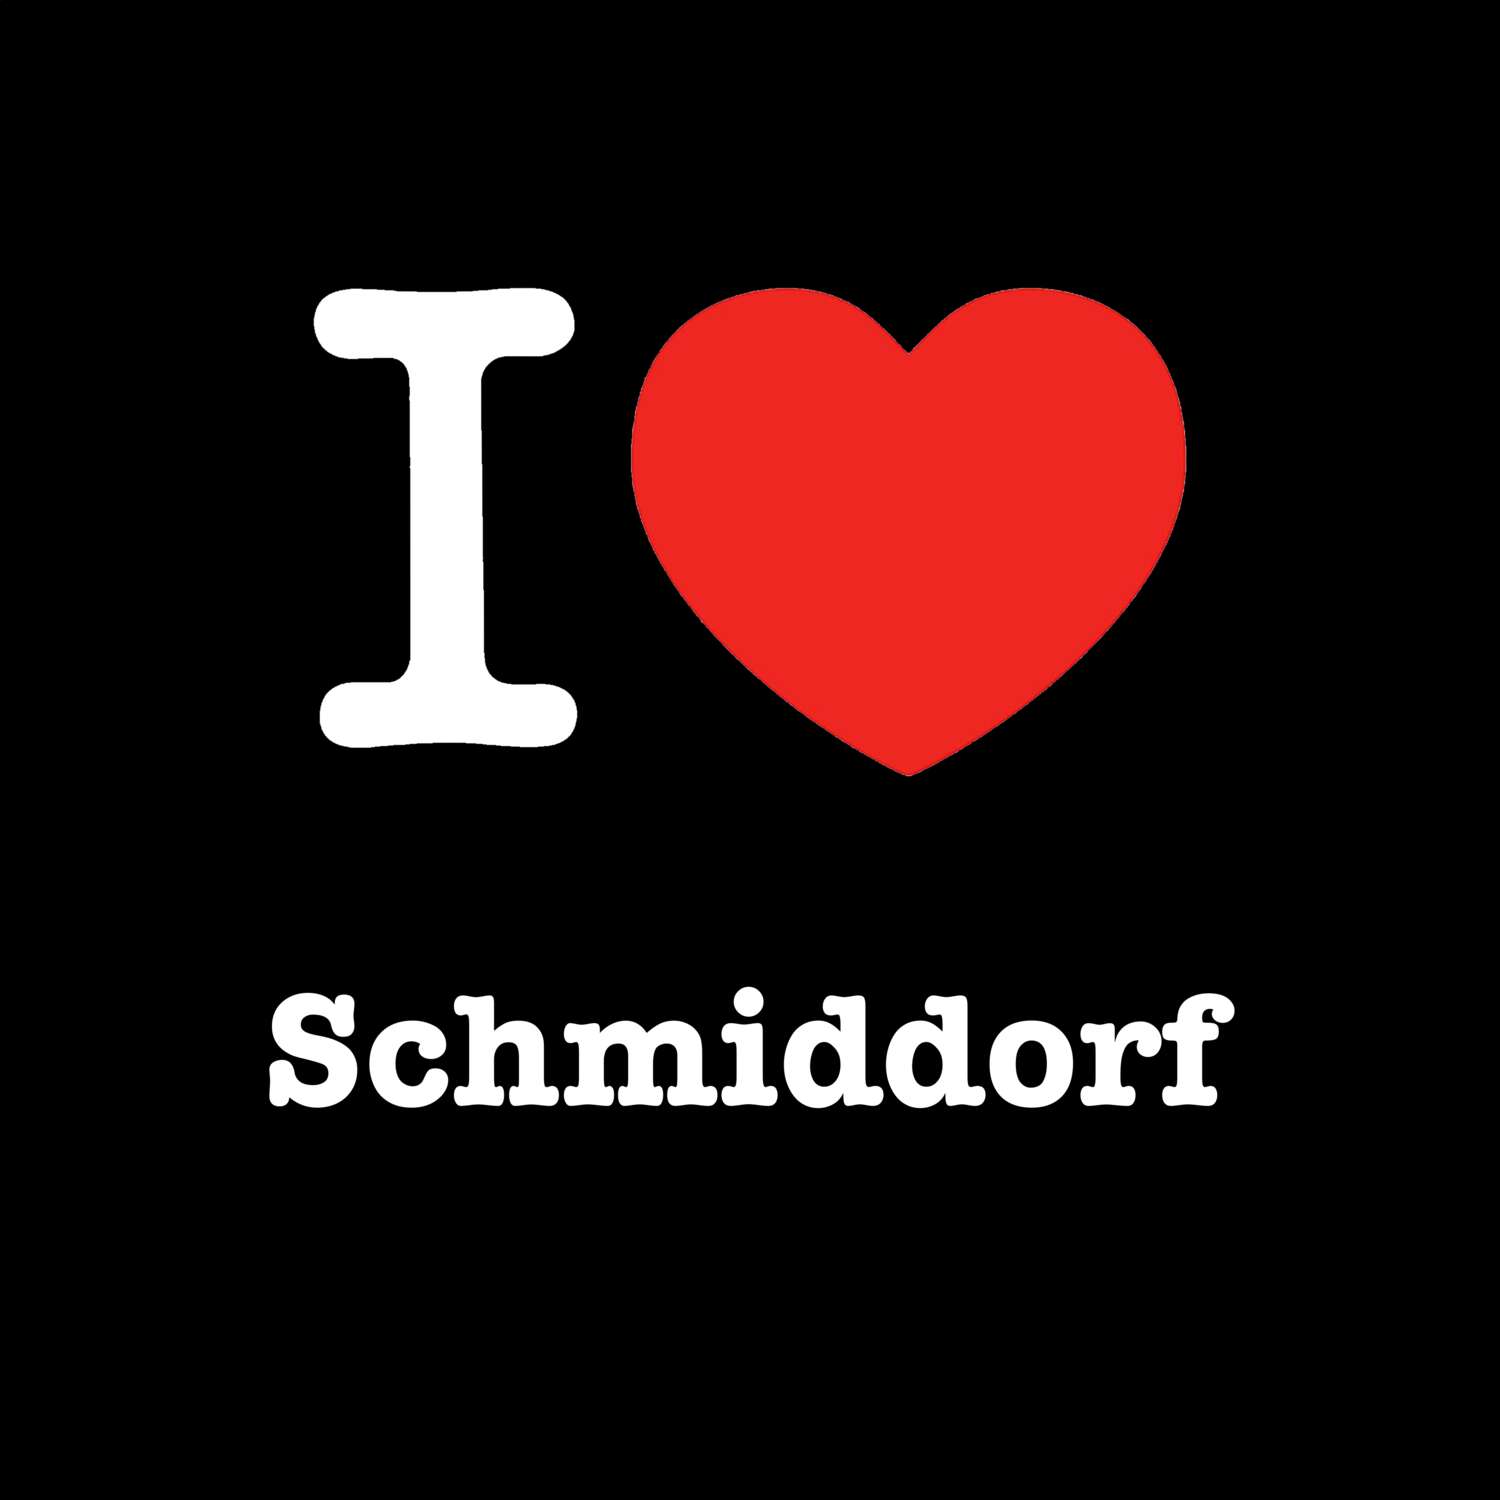 Schmiddorf T-Shirt »I love«